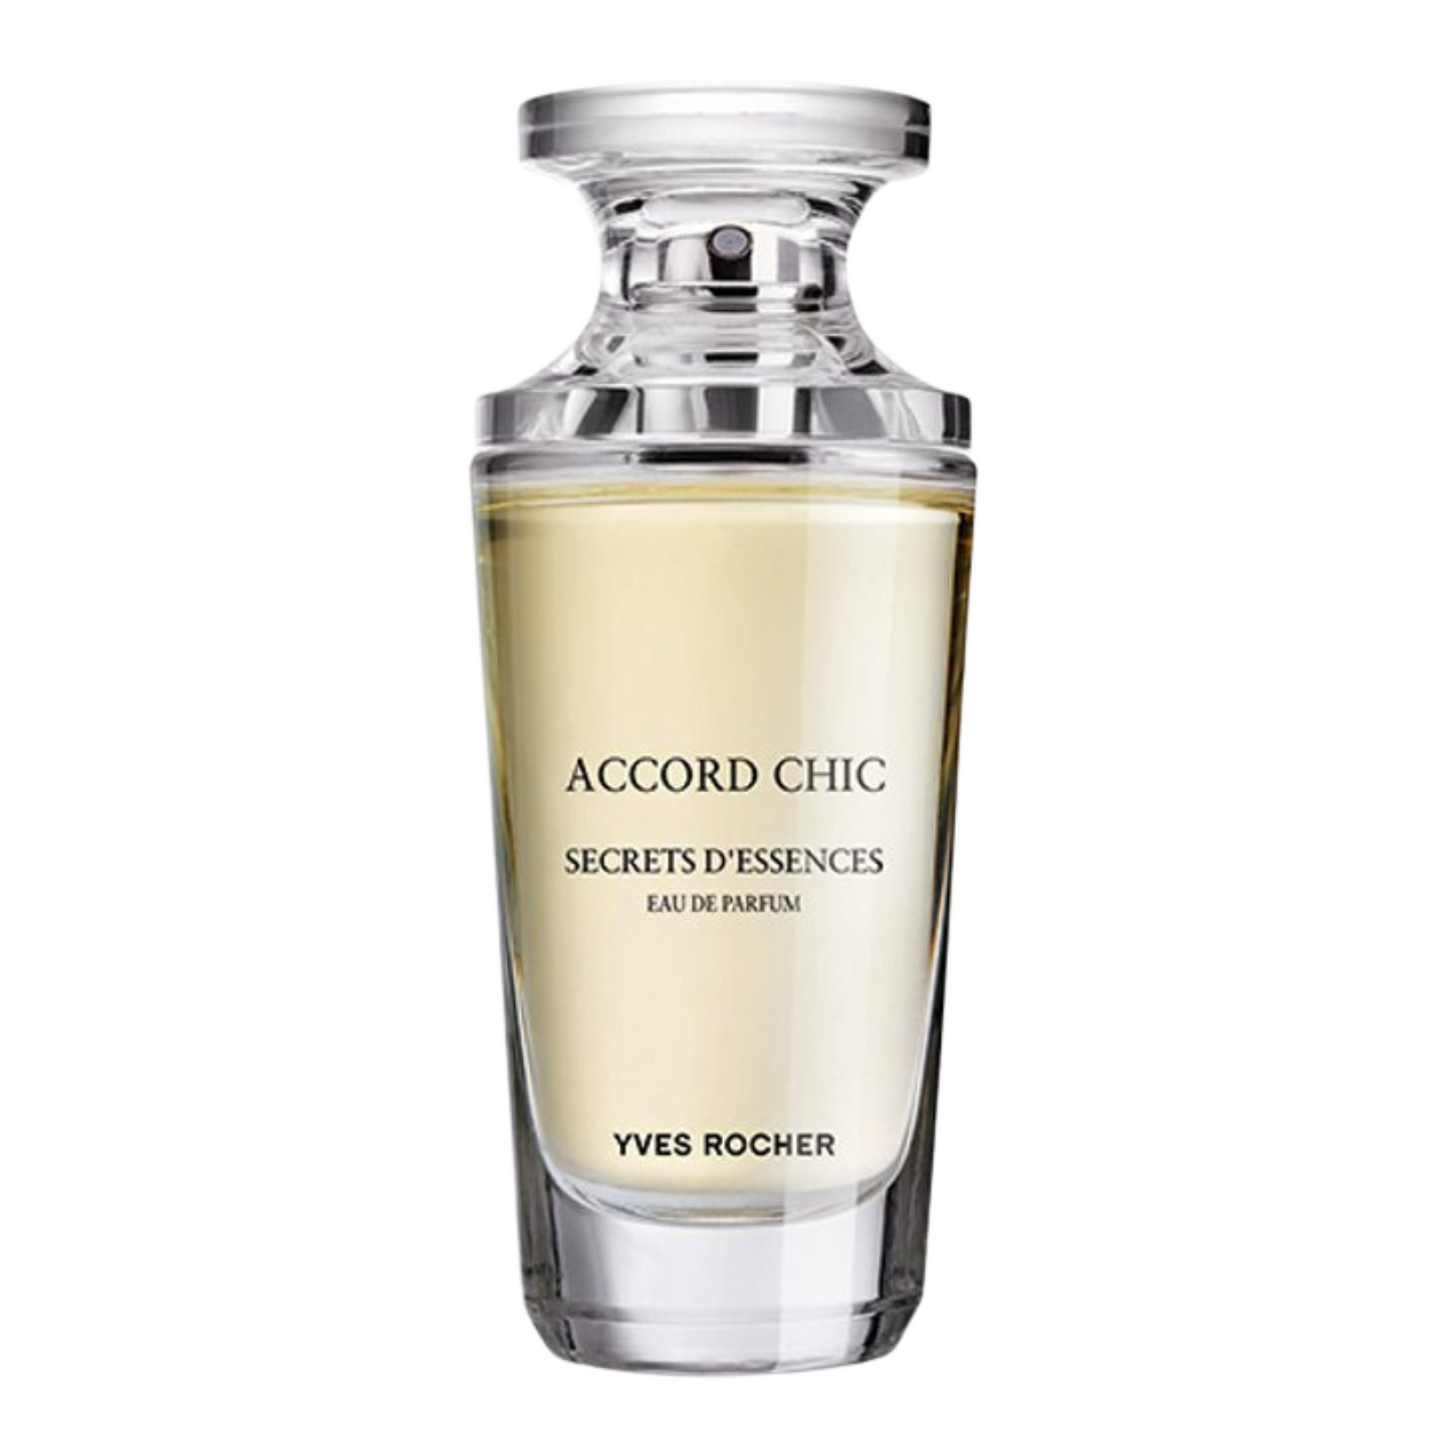 Yves Rocher Secrets d'essences Accord Chic 50ml Eau de Parfum